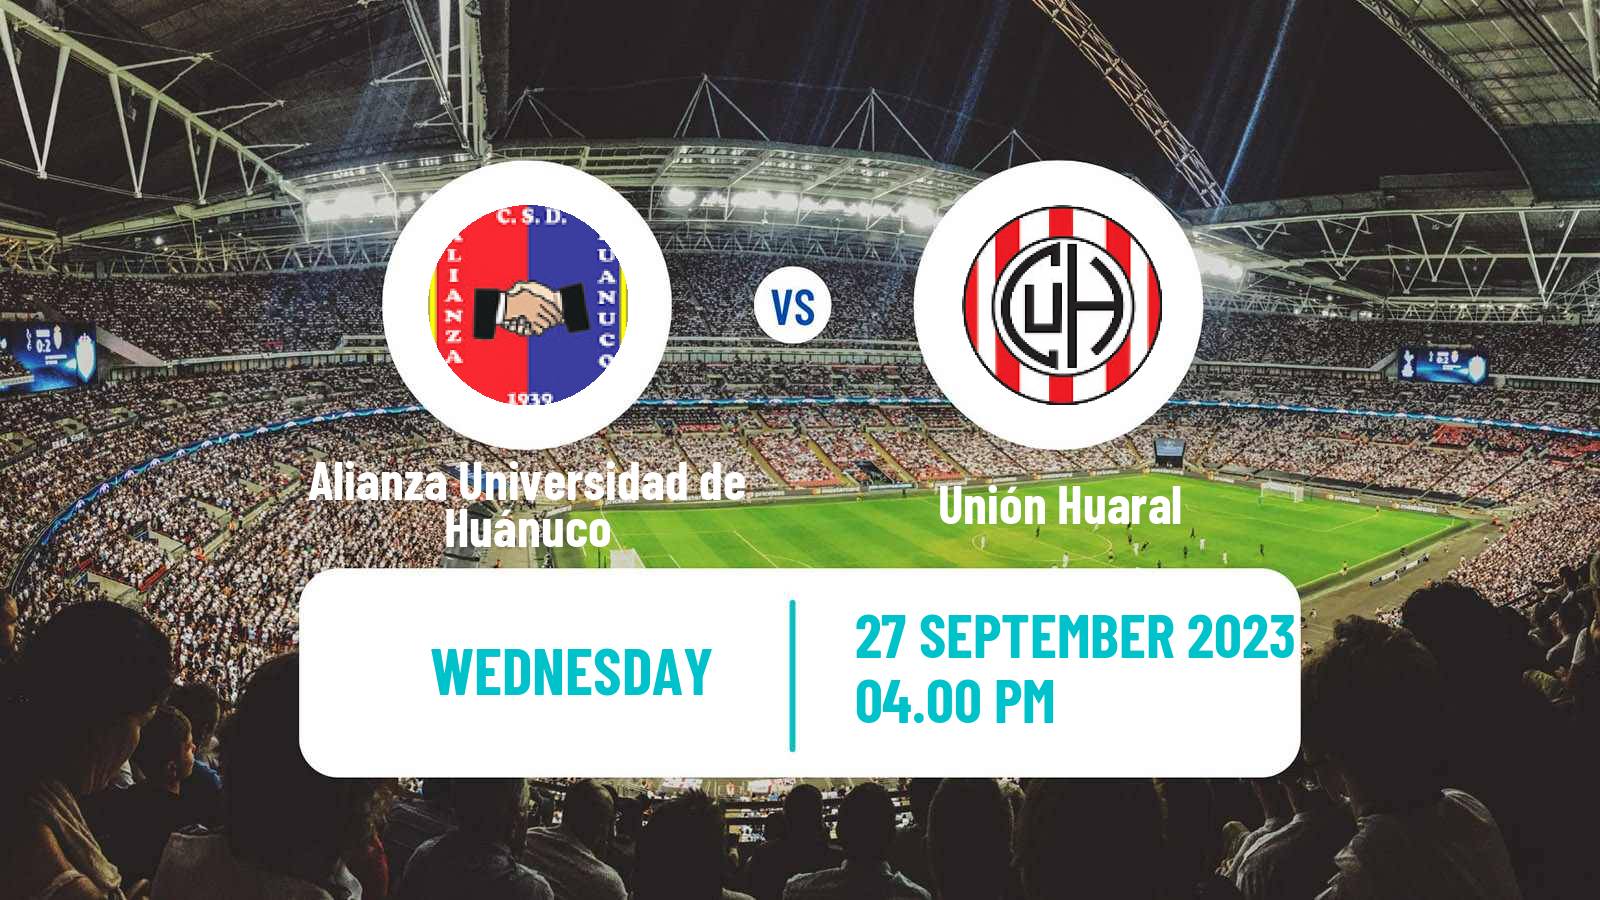 Soccer Peruvian Liga 2 Alianza Universidad de Huánuco - Unión Huaral